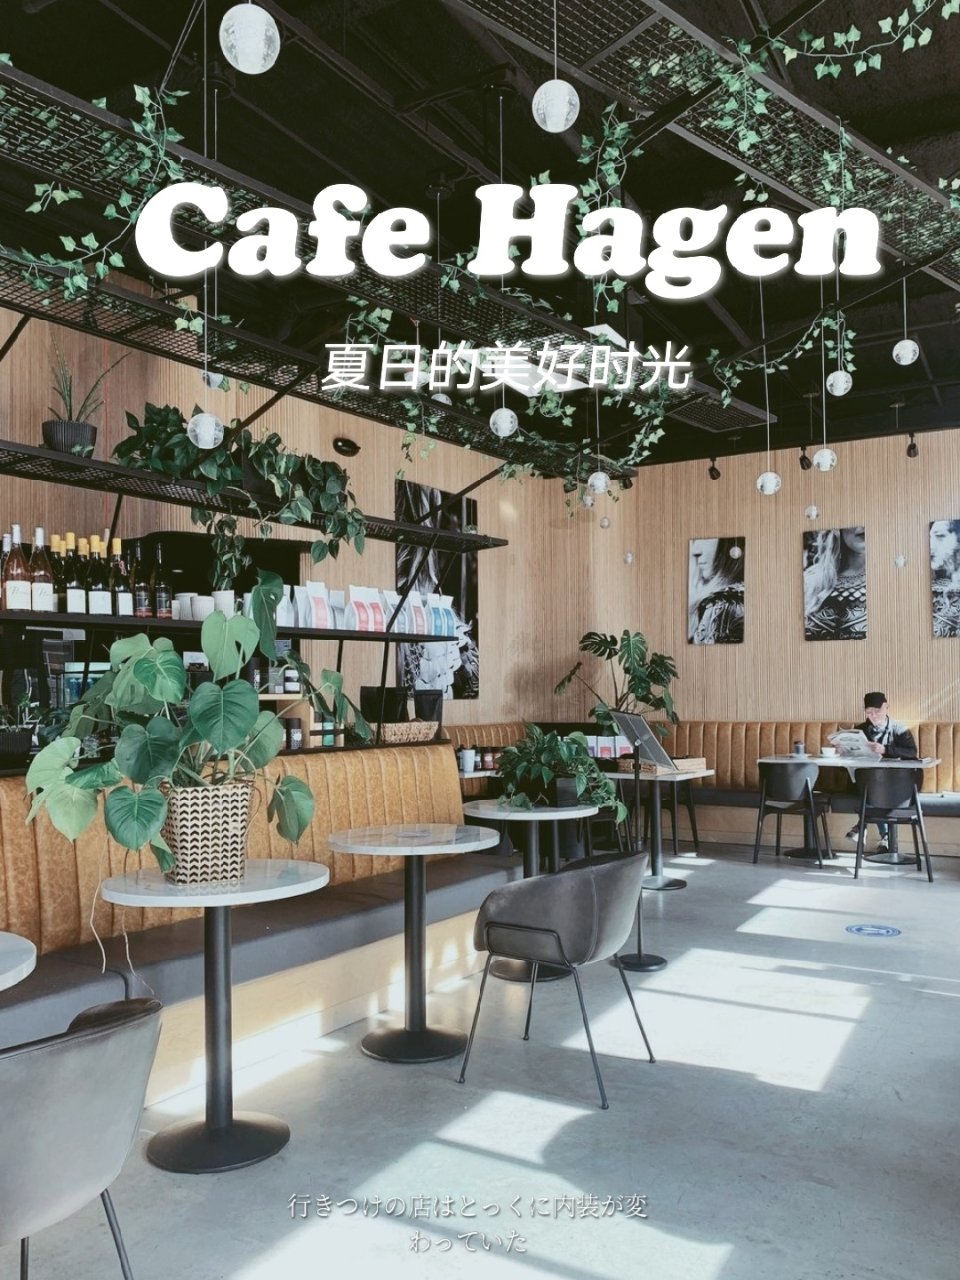 Cafe Hagen